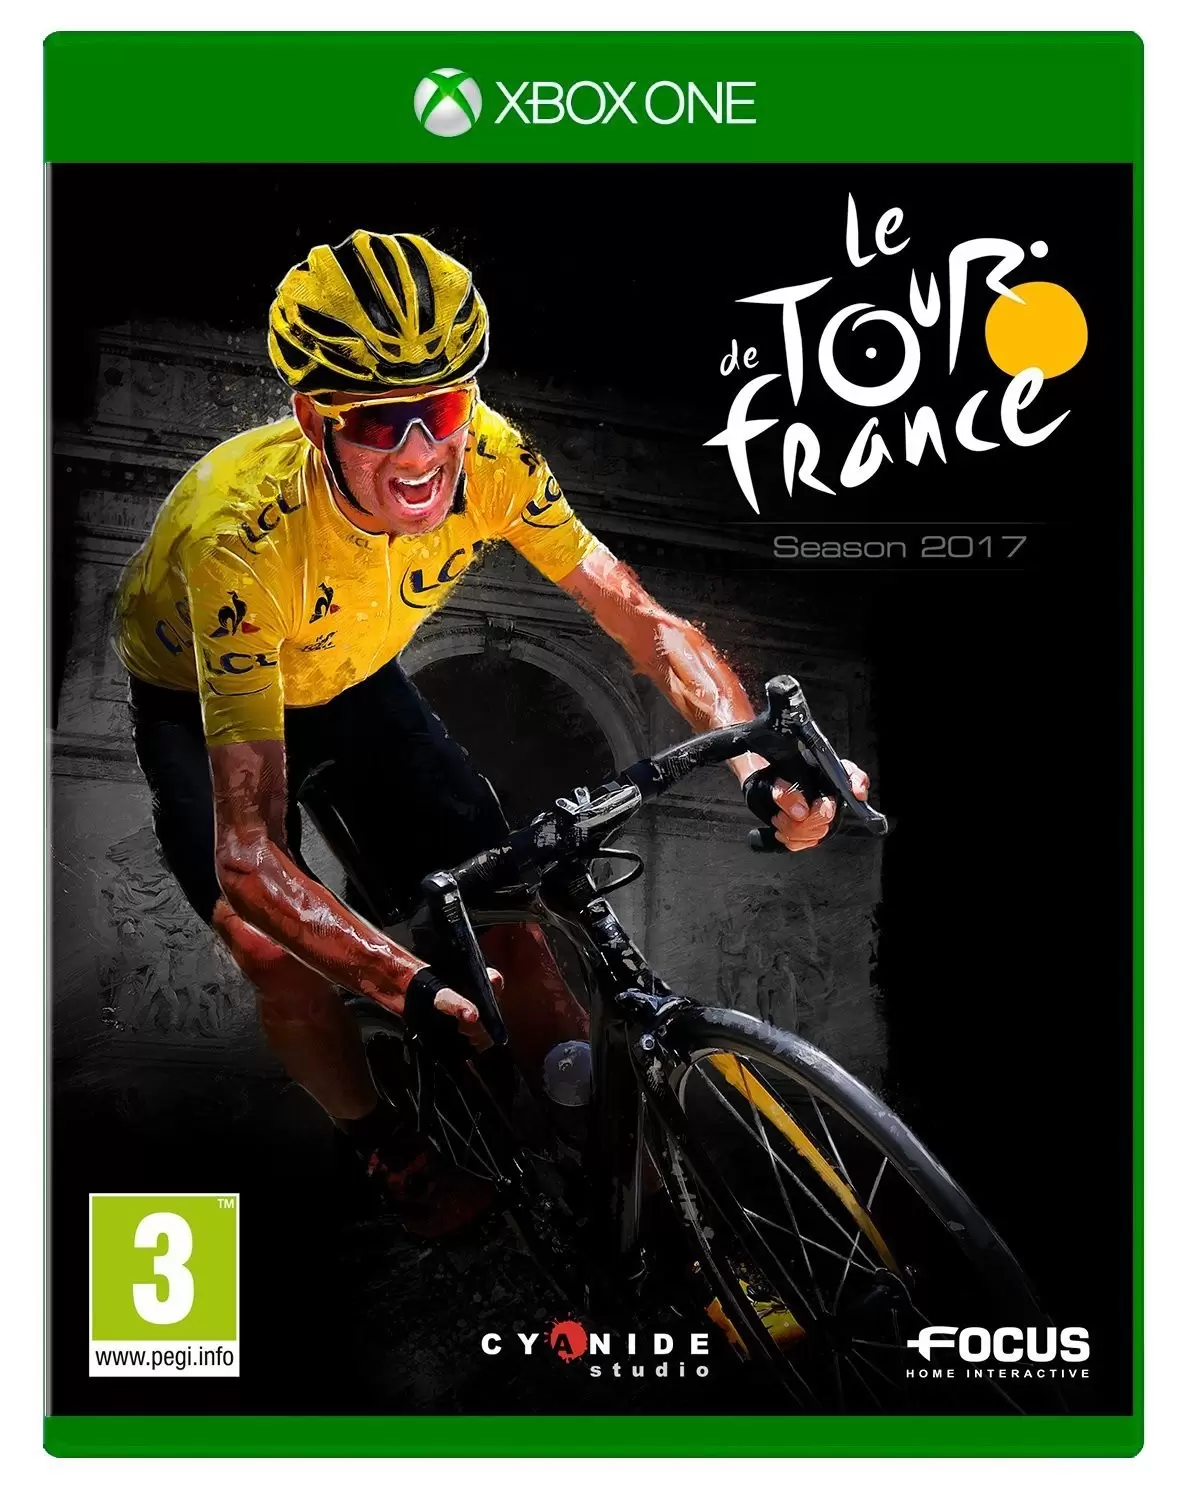 XBOX One Games - Tour de France 2017